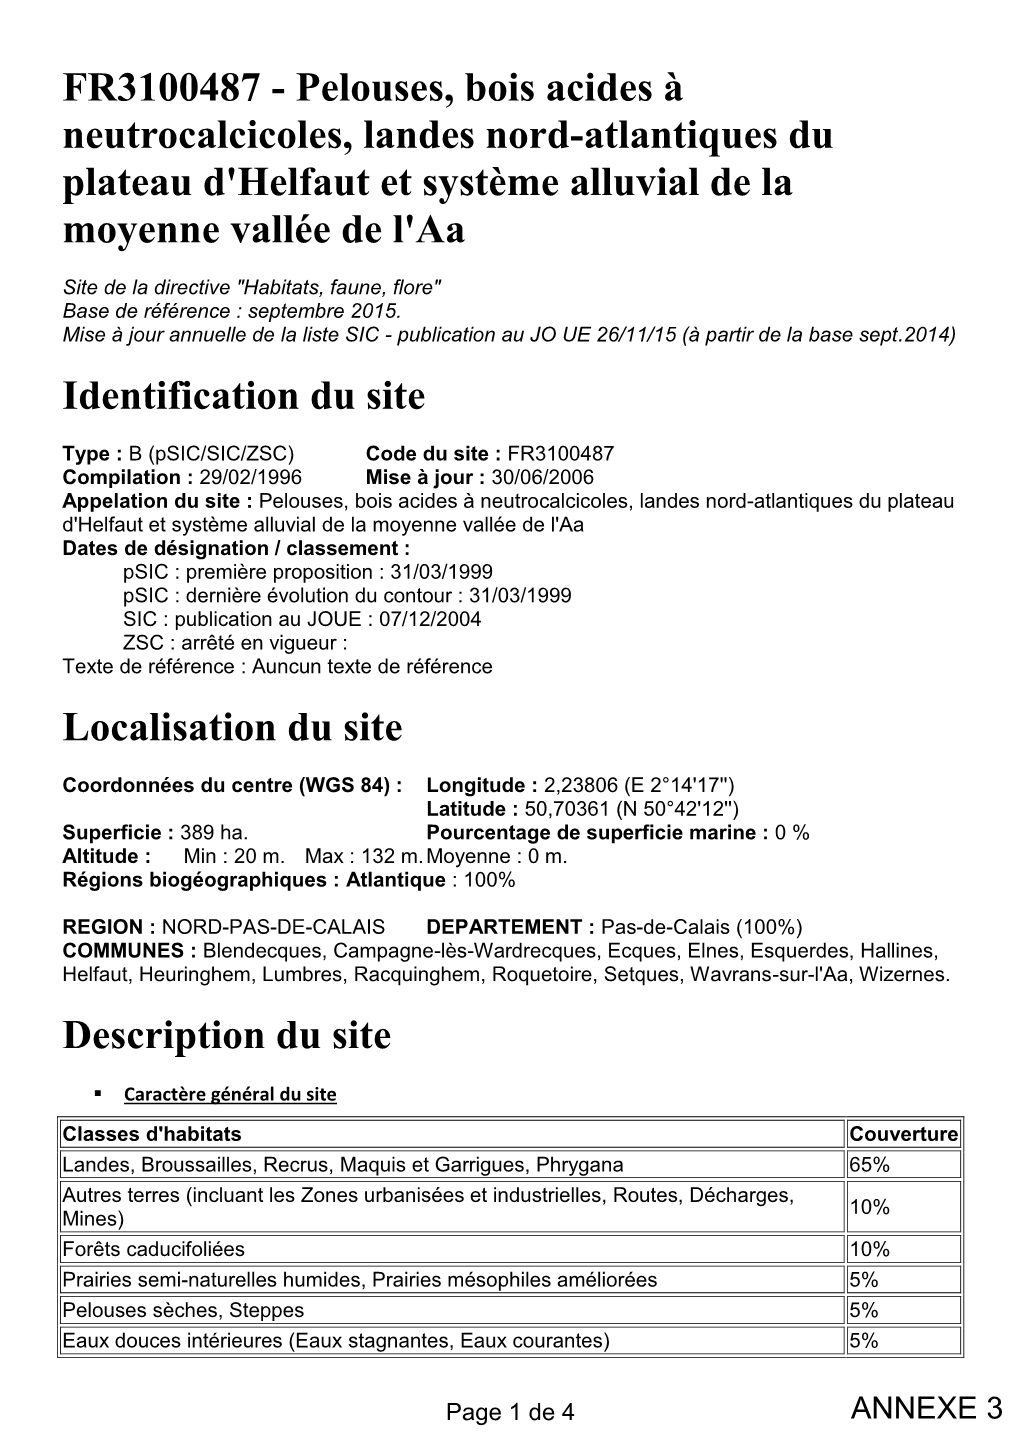 FR3100487 - Pelouses, Bois Acides À Neutrocalcicoles, Landes Nord-Atlantiques Du Plateau D'helfaut Et Système Alluvial De La Moyenne Vallée De L'aa